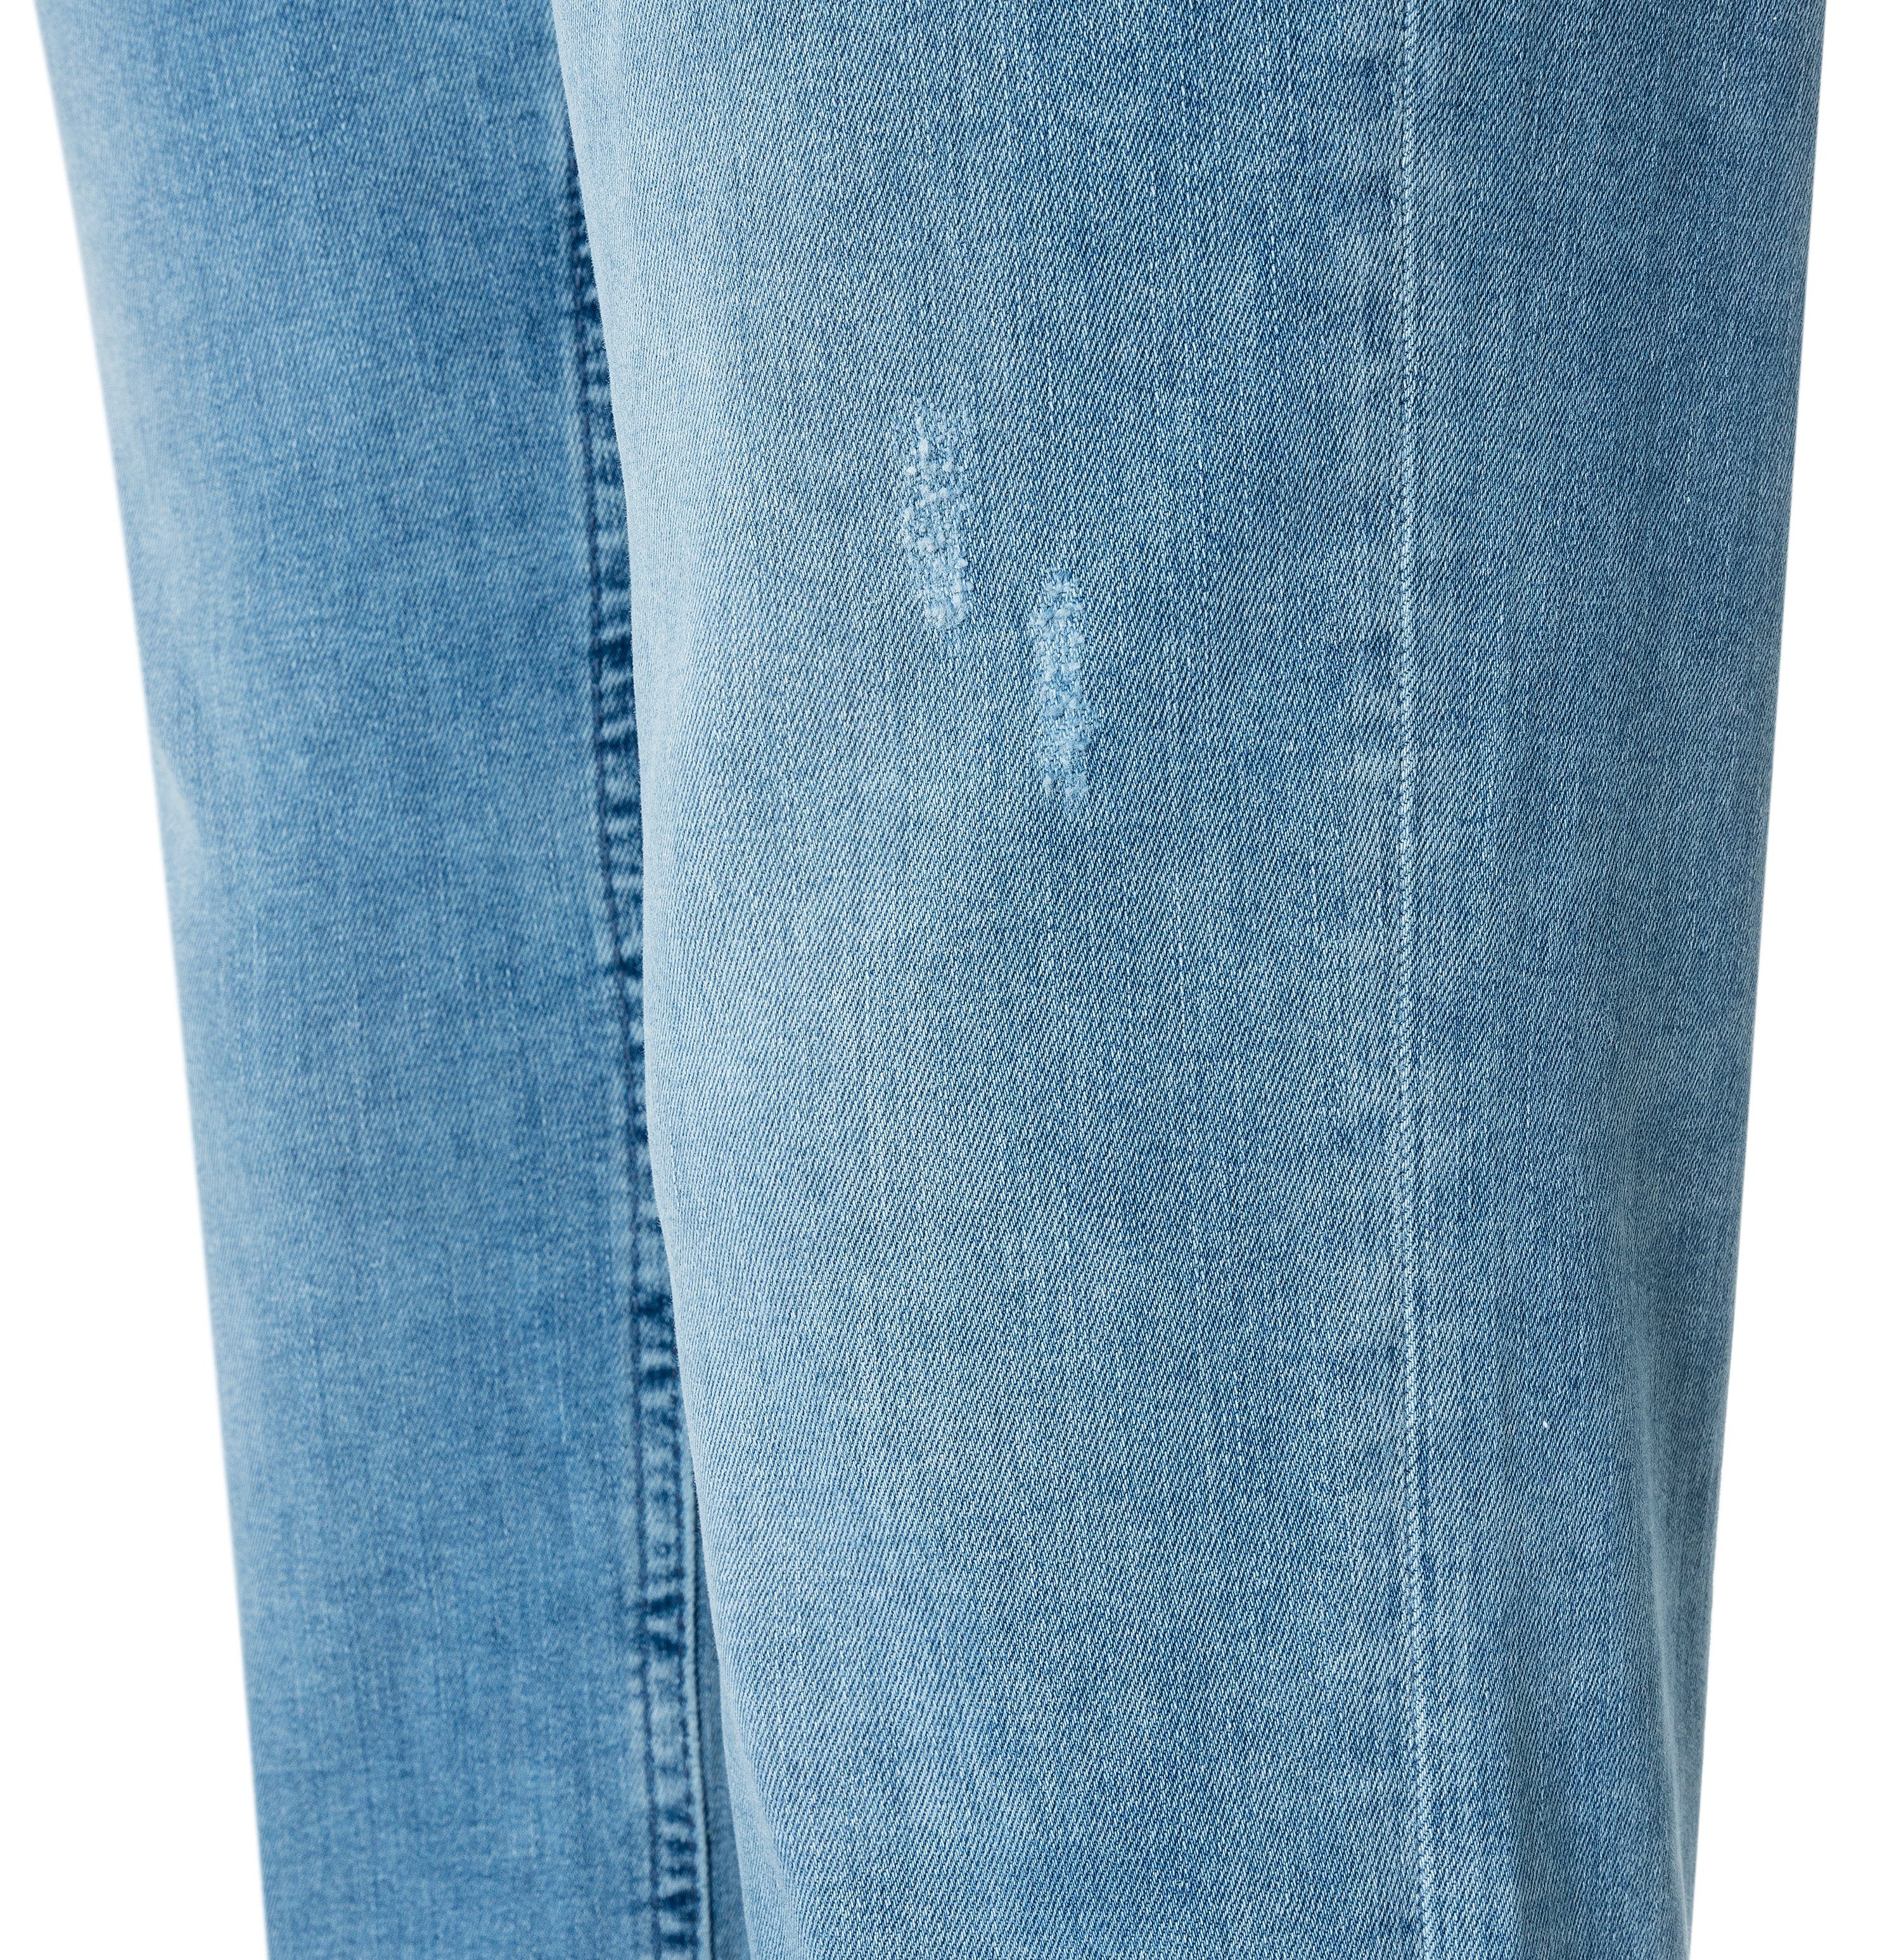 MAC Stretch-Jeans MAC trendy SLIM batic D429 RICH wash 5743-90-0387